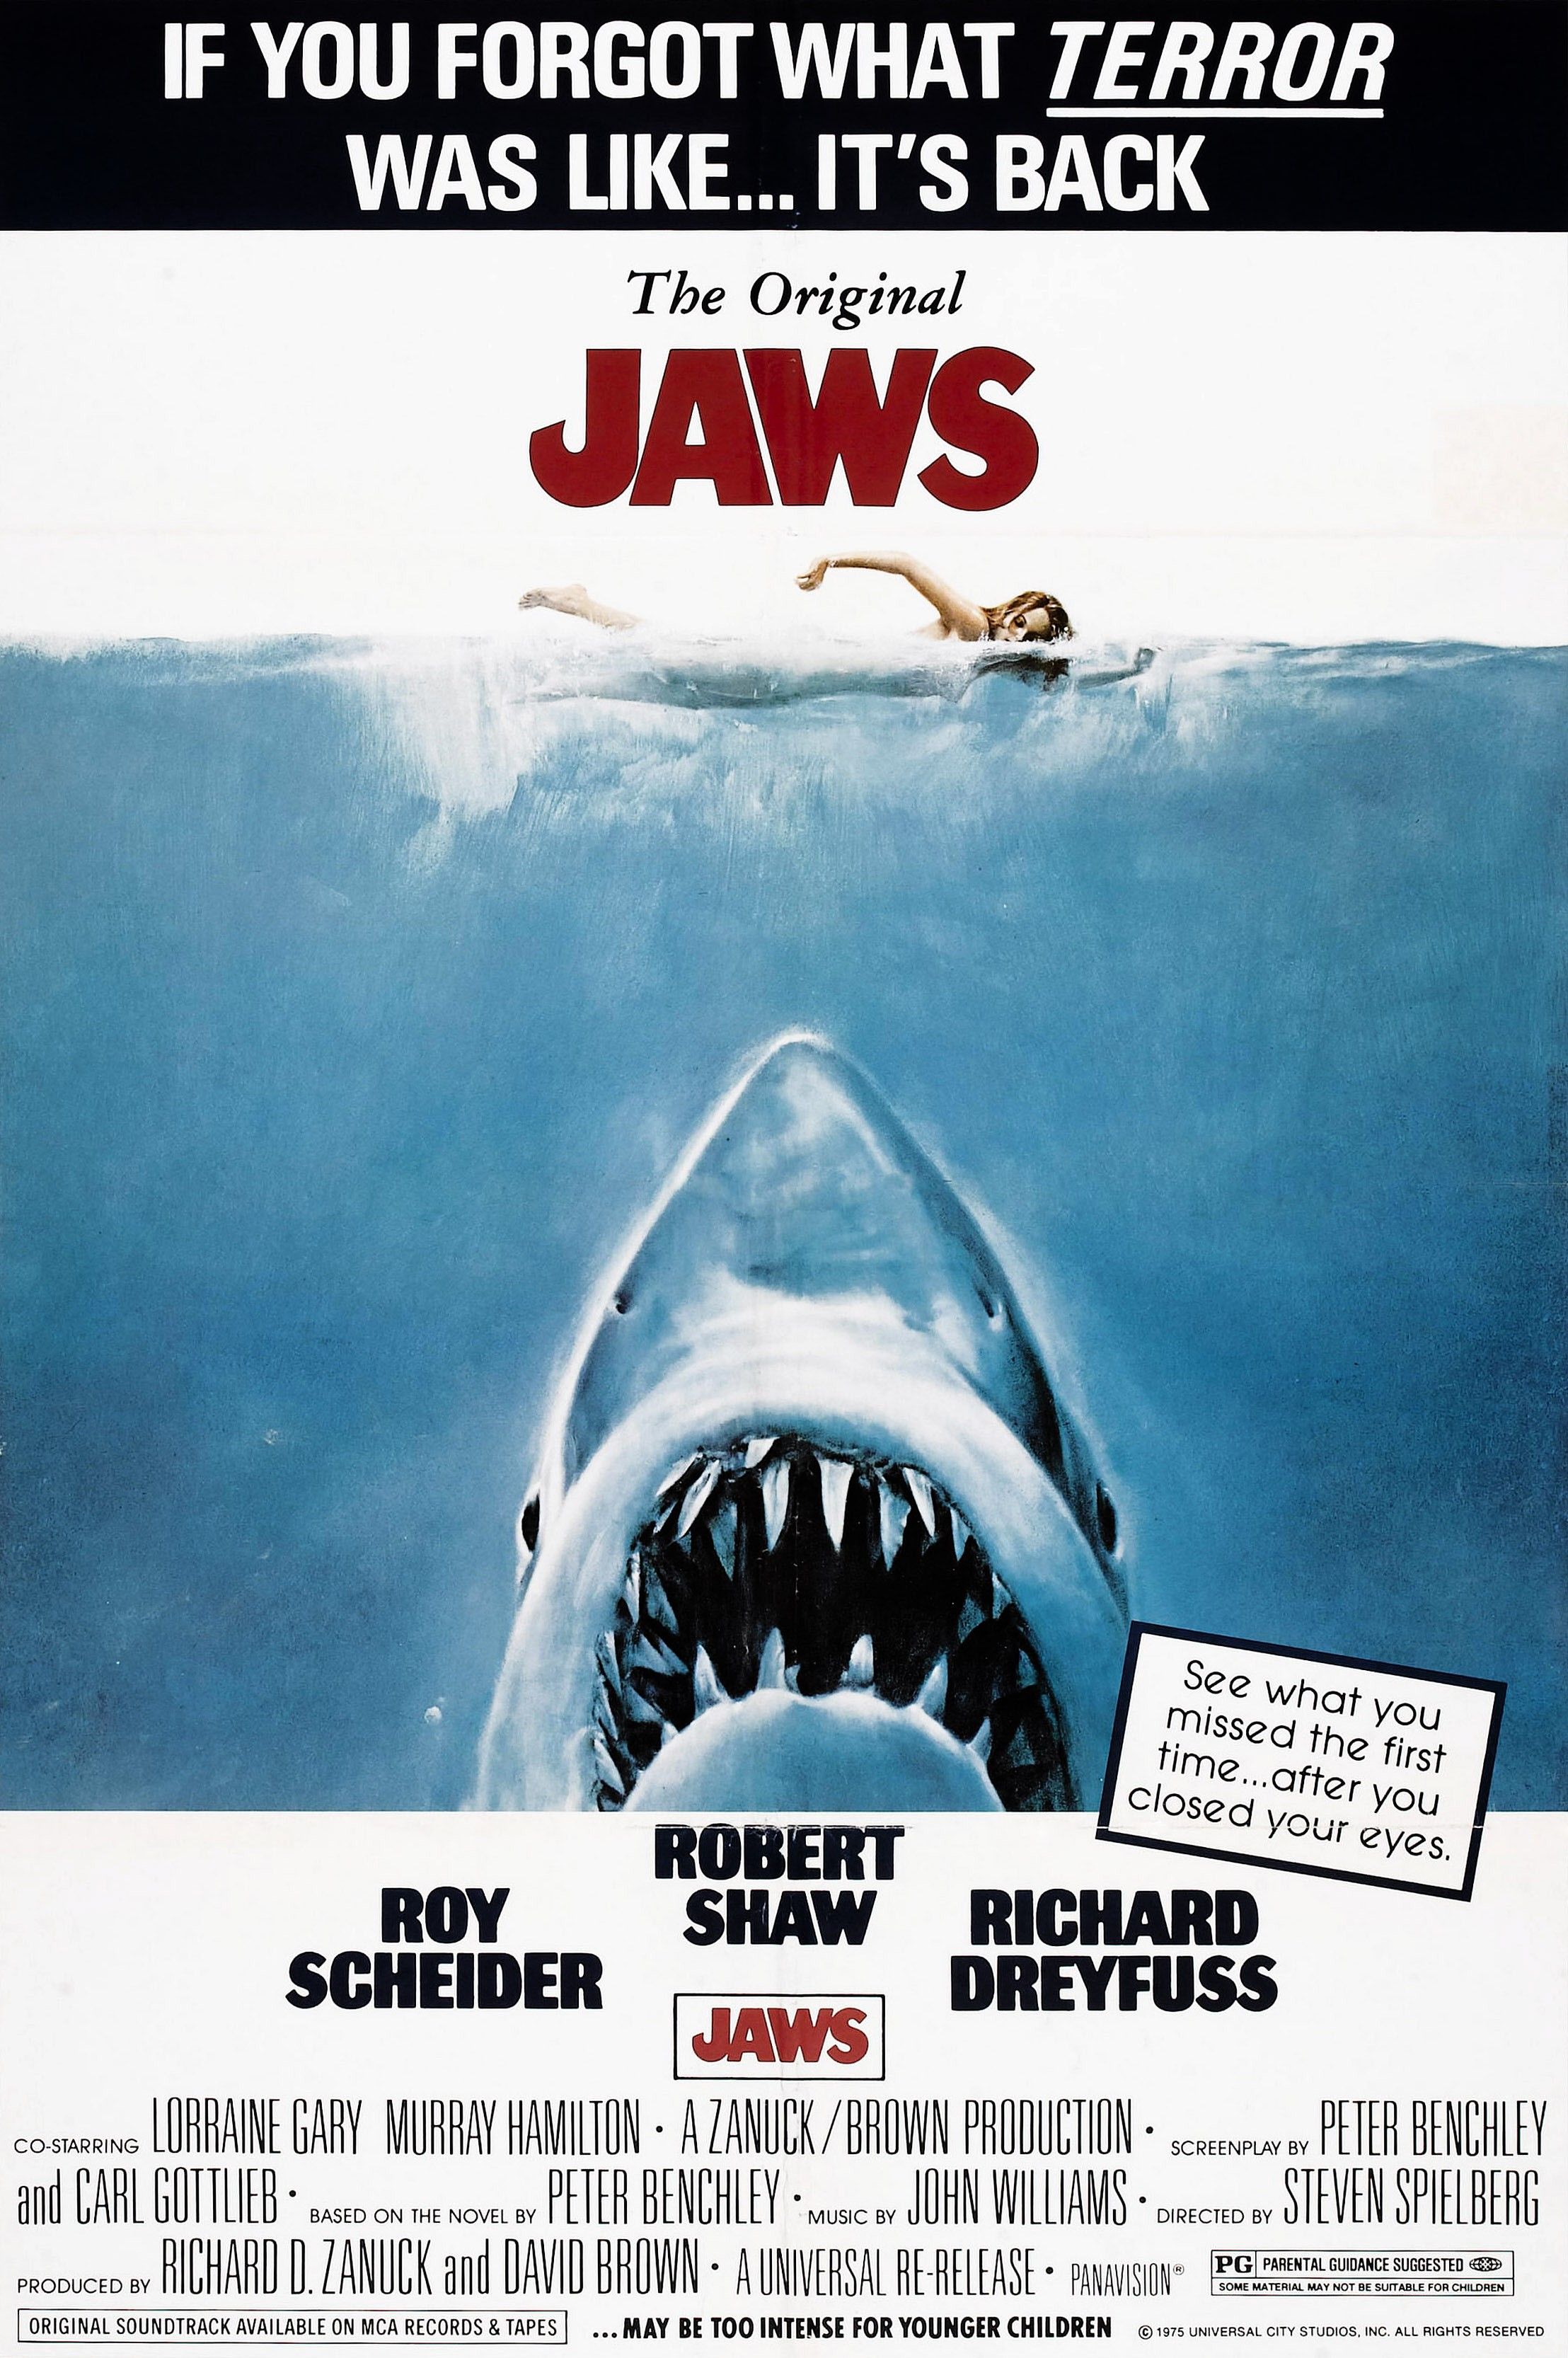 映画『ジョーズ』に影響を与えた、サメと人間に実際に起こった脅威の事件